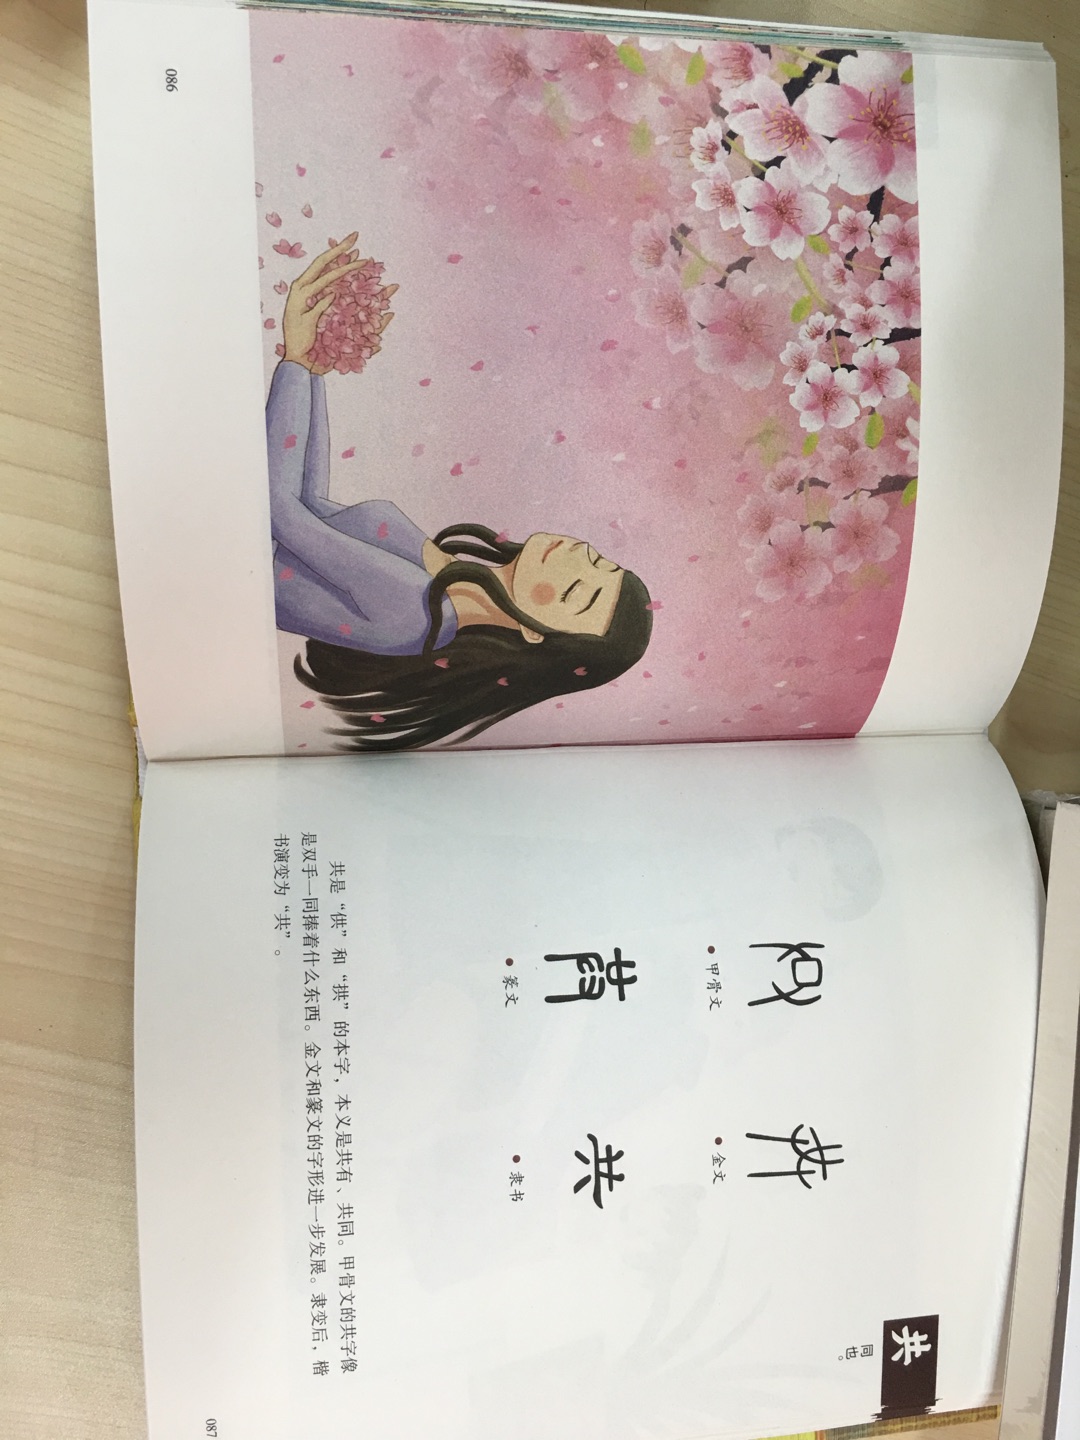 读了这本书后，孩子知道了汉字是如何形成和演变的，不会让孩子觉得学习汉字是一件枯燥乏味的事情了。吸取传统文化的营养，丰富专业的知识，去更加了解中国汉字文化的美，去感受中国汉字的精髓。主要选取一些与人的生活有关的字，按章讲述，如人与人类，水与山，家畜，车、路和船，农耕，酒和器皿，麻与丝、竹与树、屋顶与房子，书籍与音乐等，同时分析和讲述中国人的生活方式和风俗习惯，加深读者对文字的理解。书中只讲述了200多个“基本汉字”，它们大多是中国人最早创造使用的汉字。可以说，这是一本孩子学习汉字的通俗易懂的入门书。